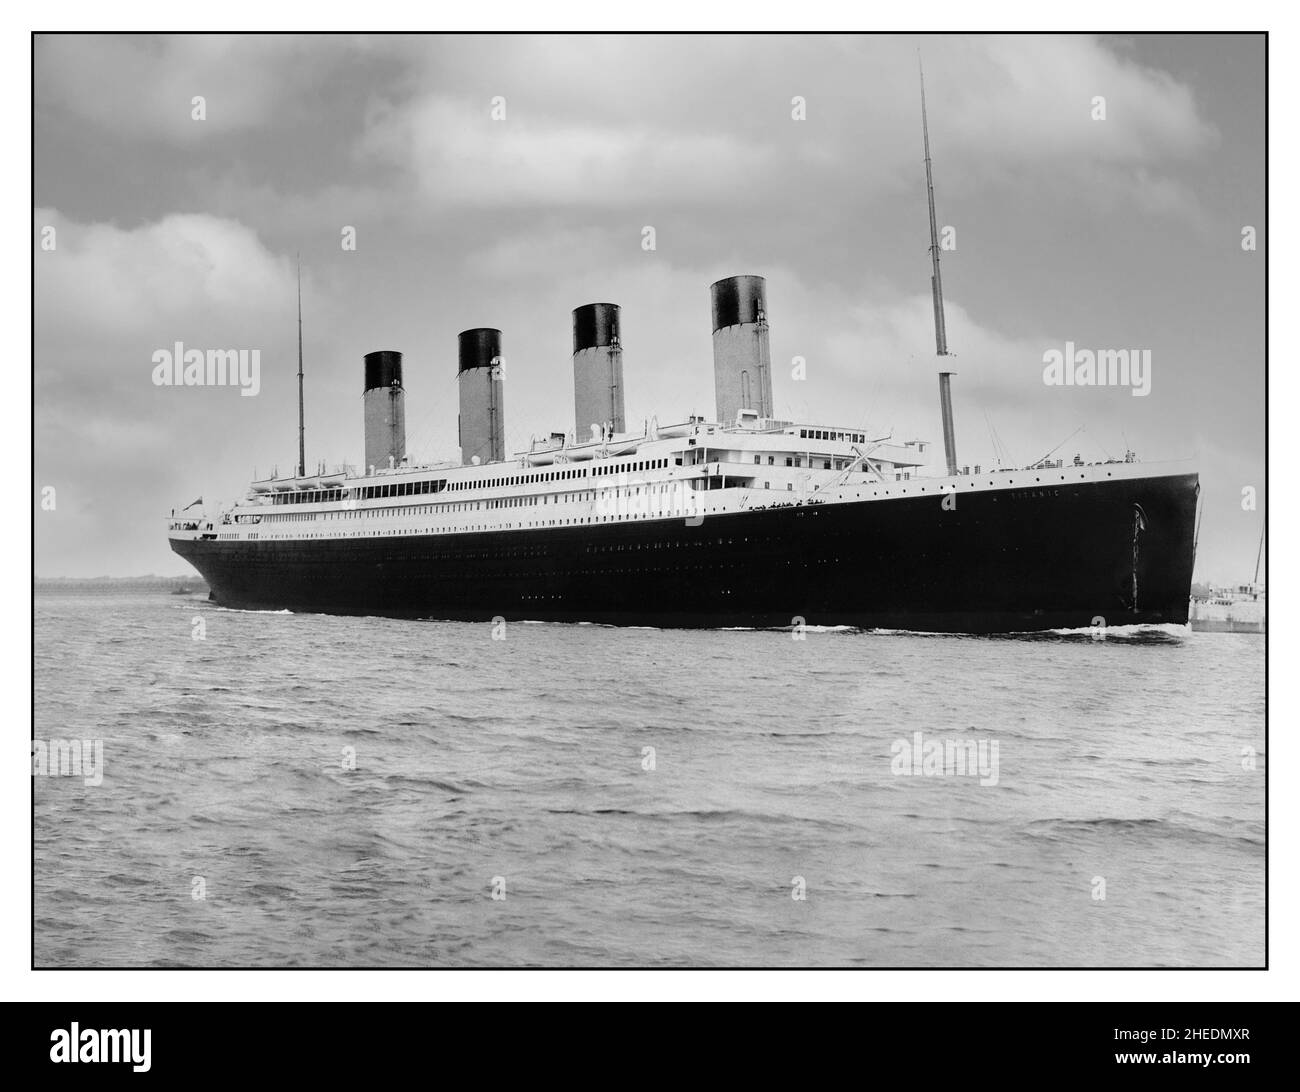 RMS Titanic bereitet sich darauf vor, von Southampton aus abzureisen, nach Cherbourg zu fahren und Passagiere abzuholen und dann ihre Jungfernfahrt nach New York zu beginnen. Datum 10. April 1912 RMS Titanic 10th. April 1912 Jungfernfahrt von Southampton UK auf ihrer schicksalhaften Jungfernfahrt nach New York, wo sie 5 Tage später am 15th. April mit einem riesigen Verlust an Menschenleben nach dem Auftreffen auf einen Eisberg auf tragische Weise sank Stockfoto